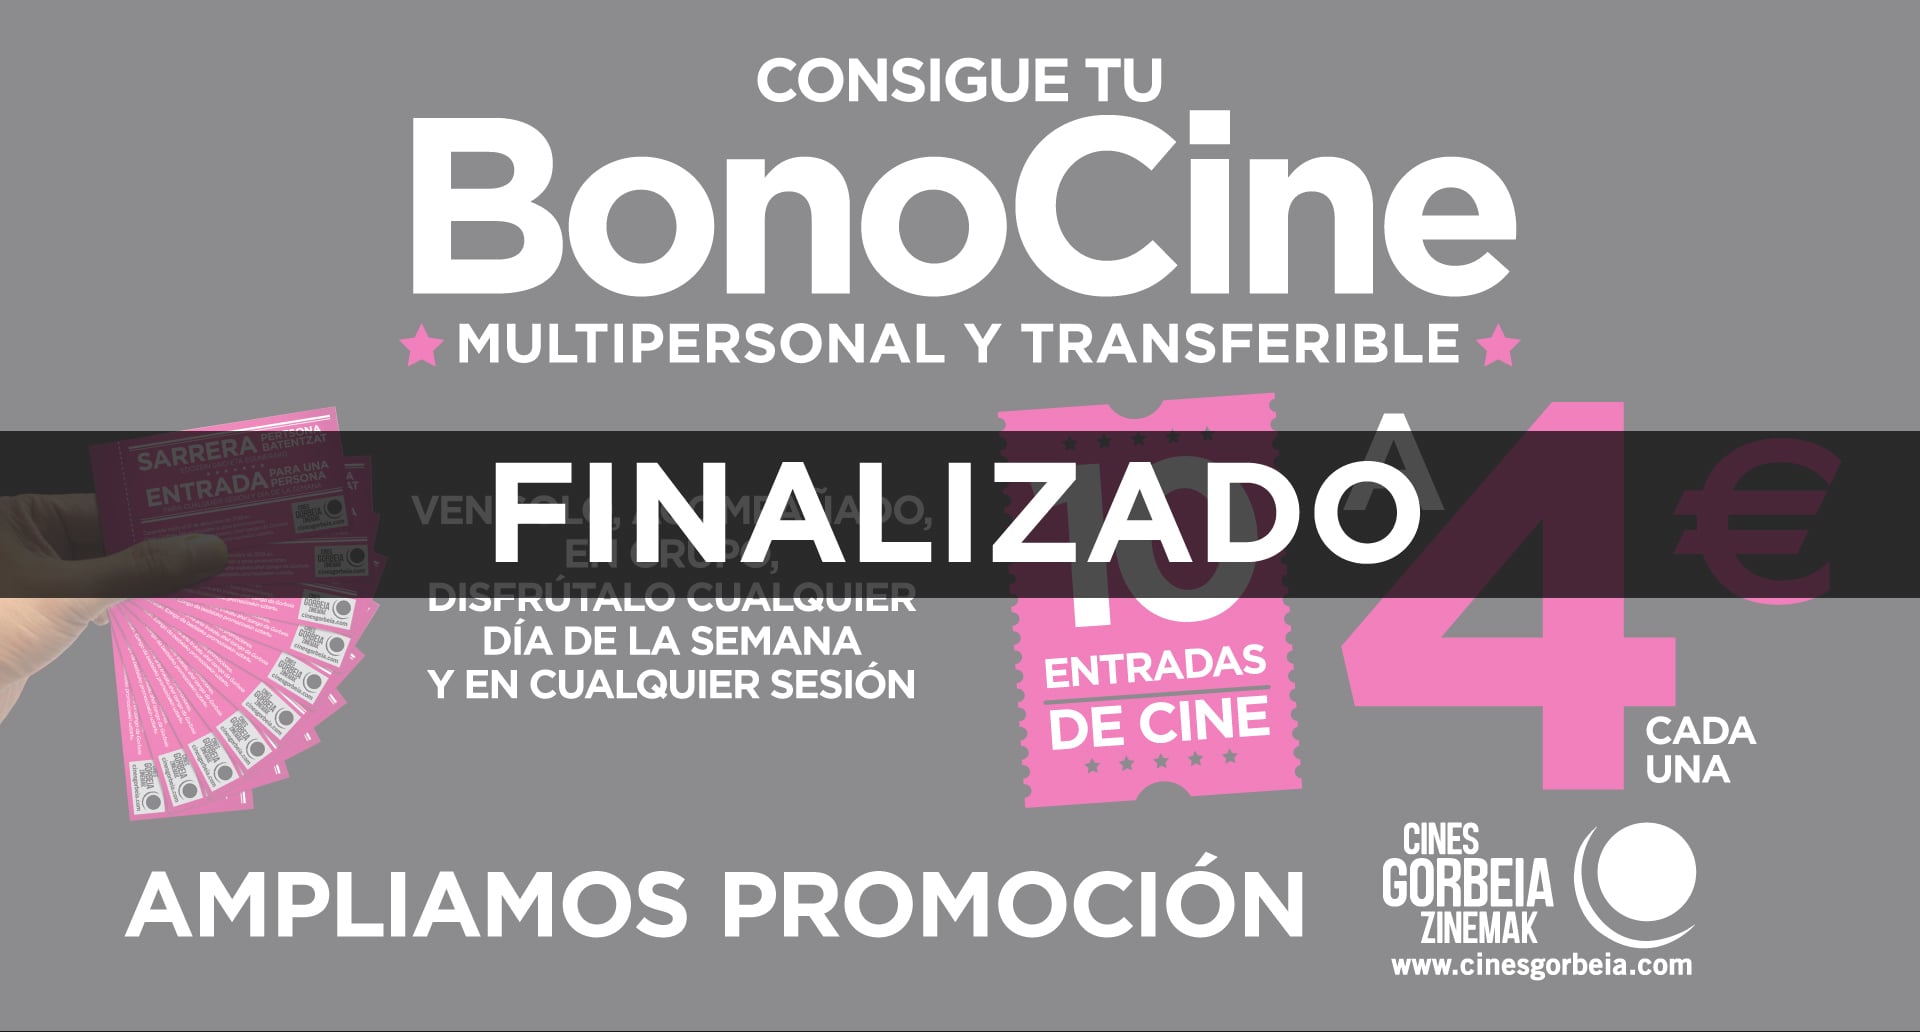 Consigue tu BonoCine multipersonal y transferible